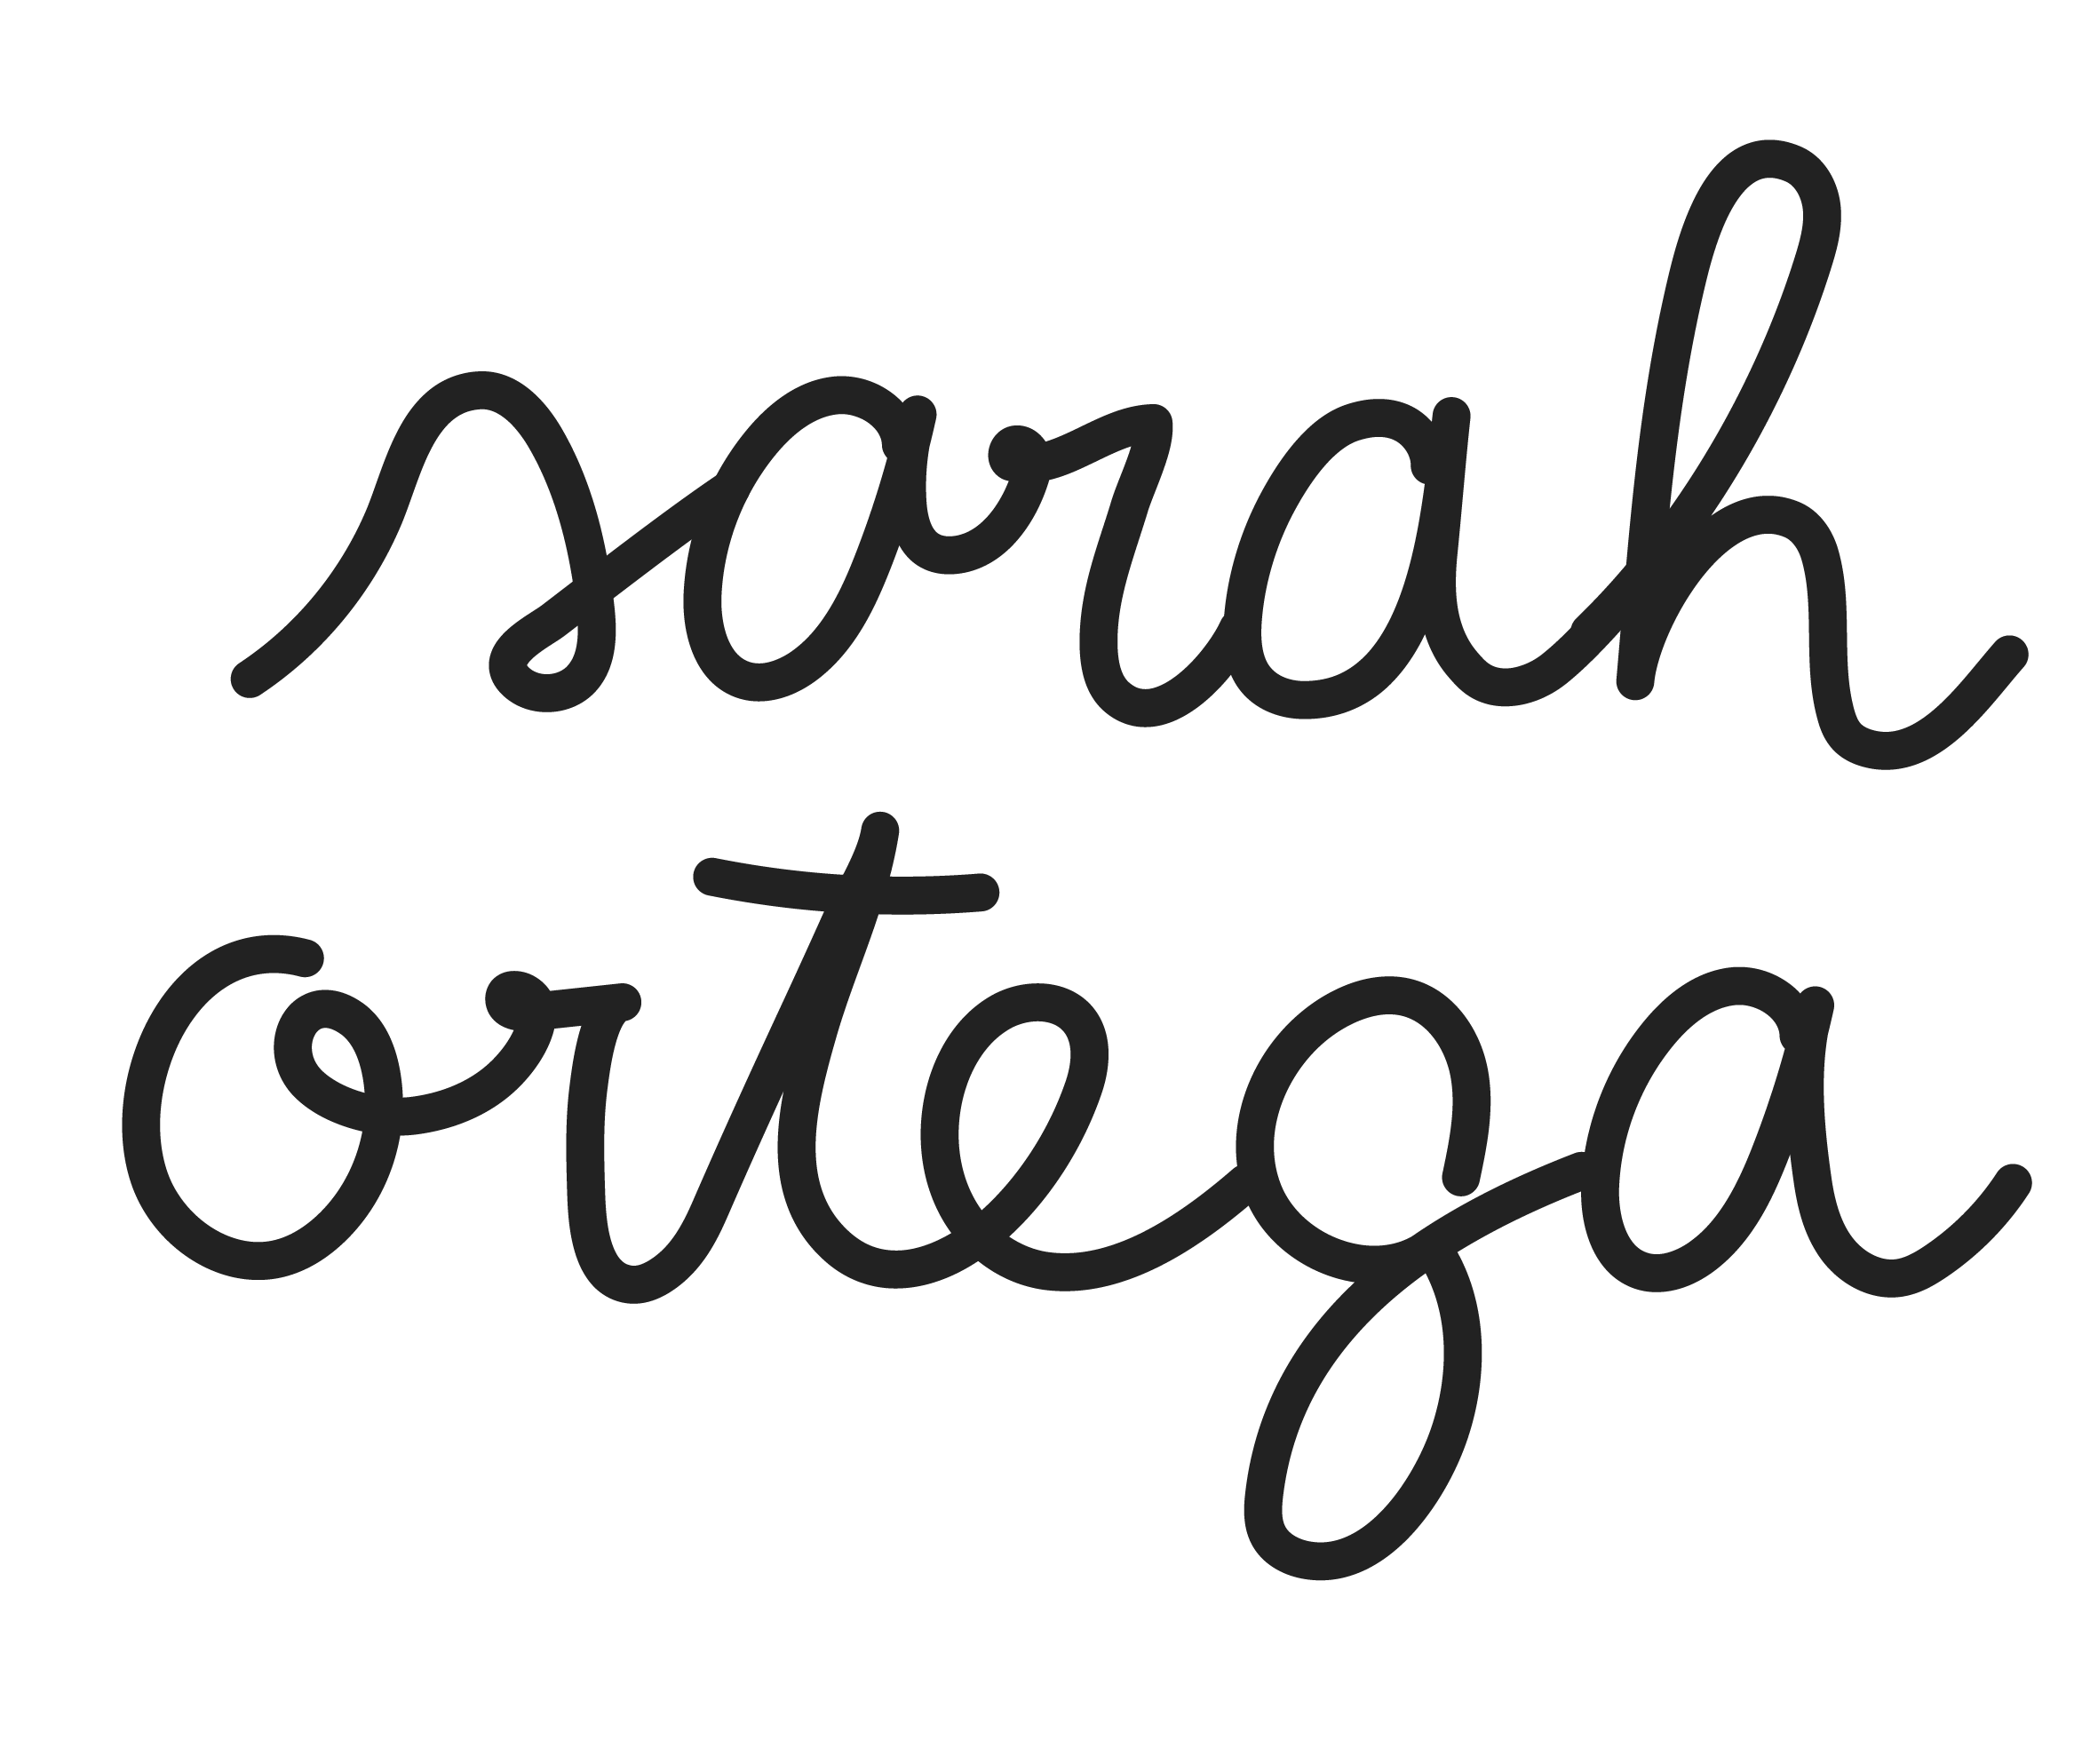 Sarah Ortega